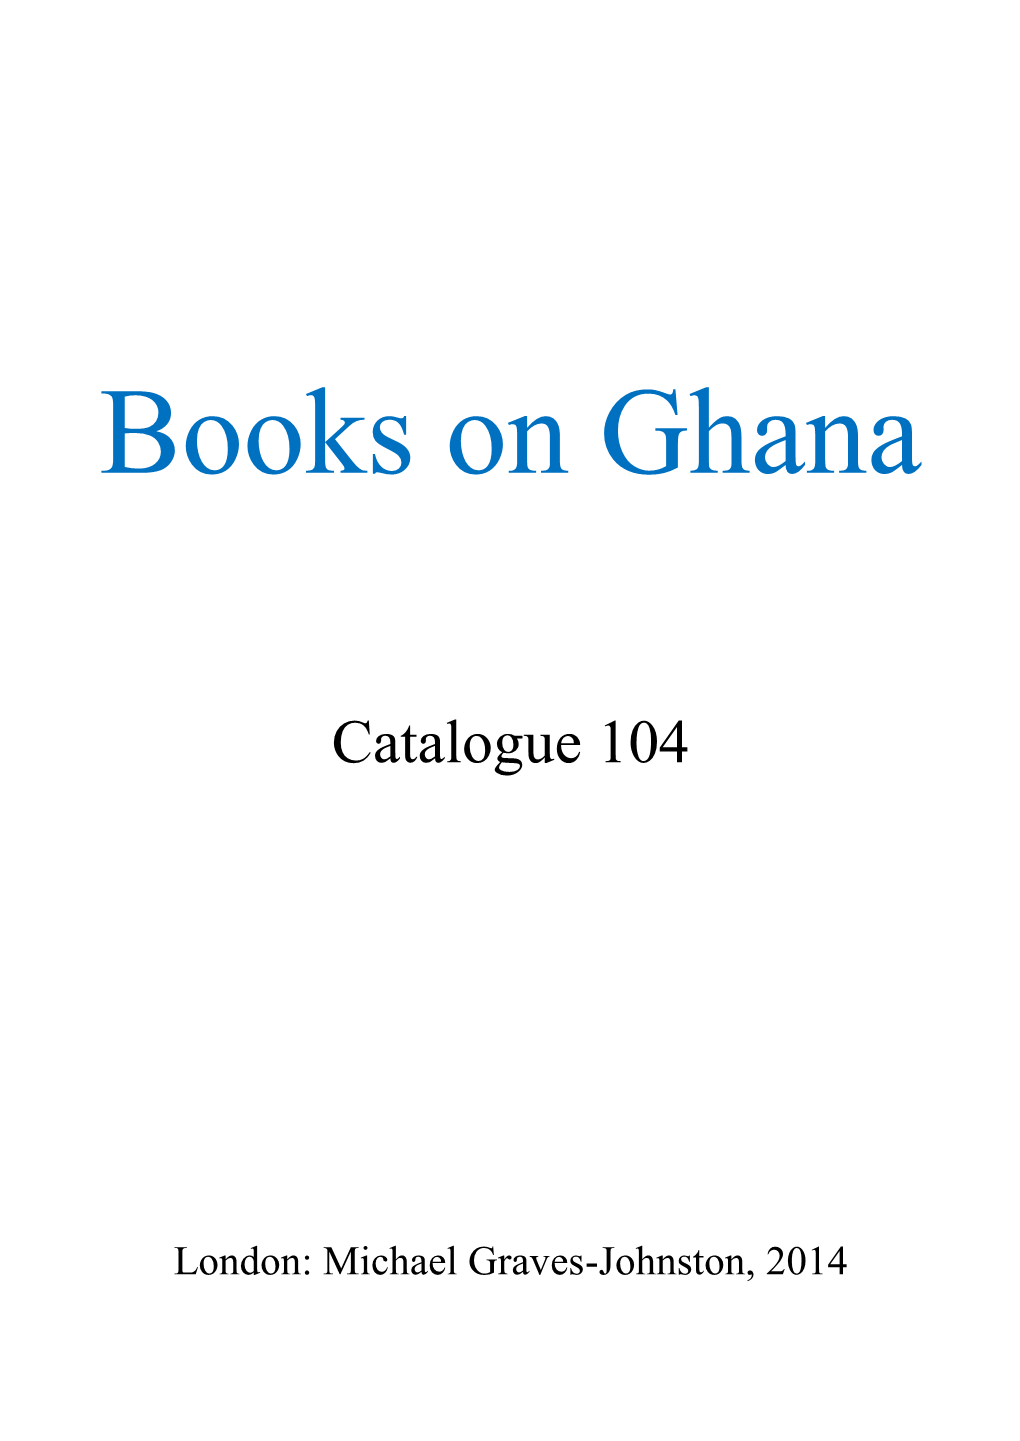 Books on Ghana, Catalogue